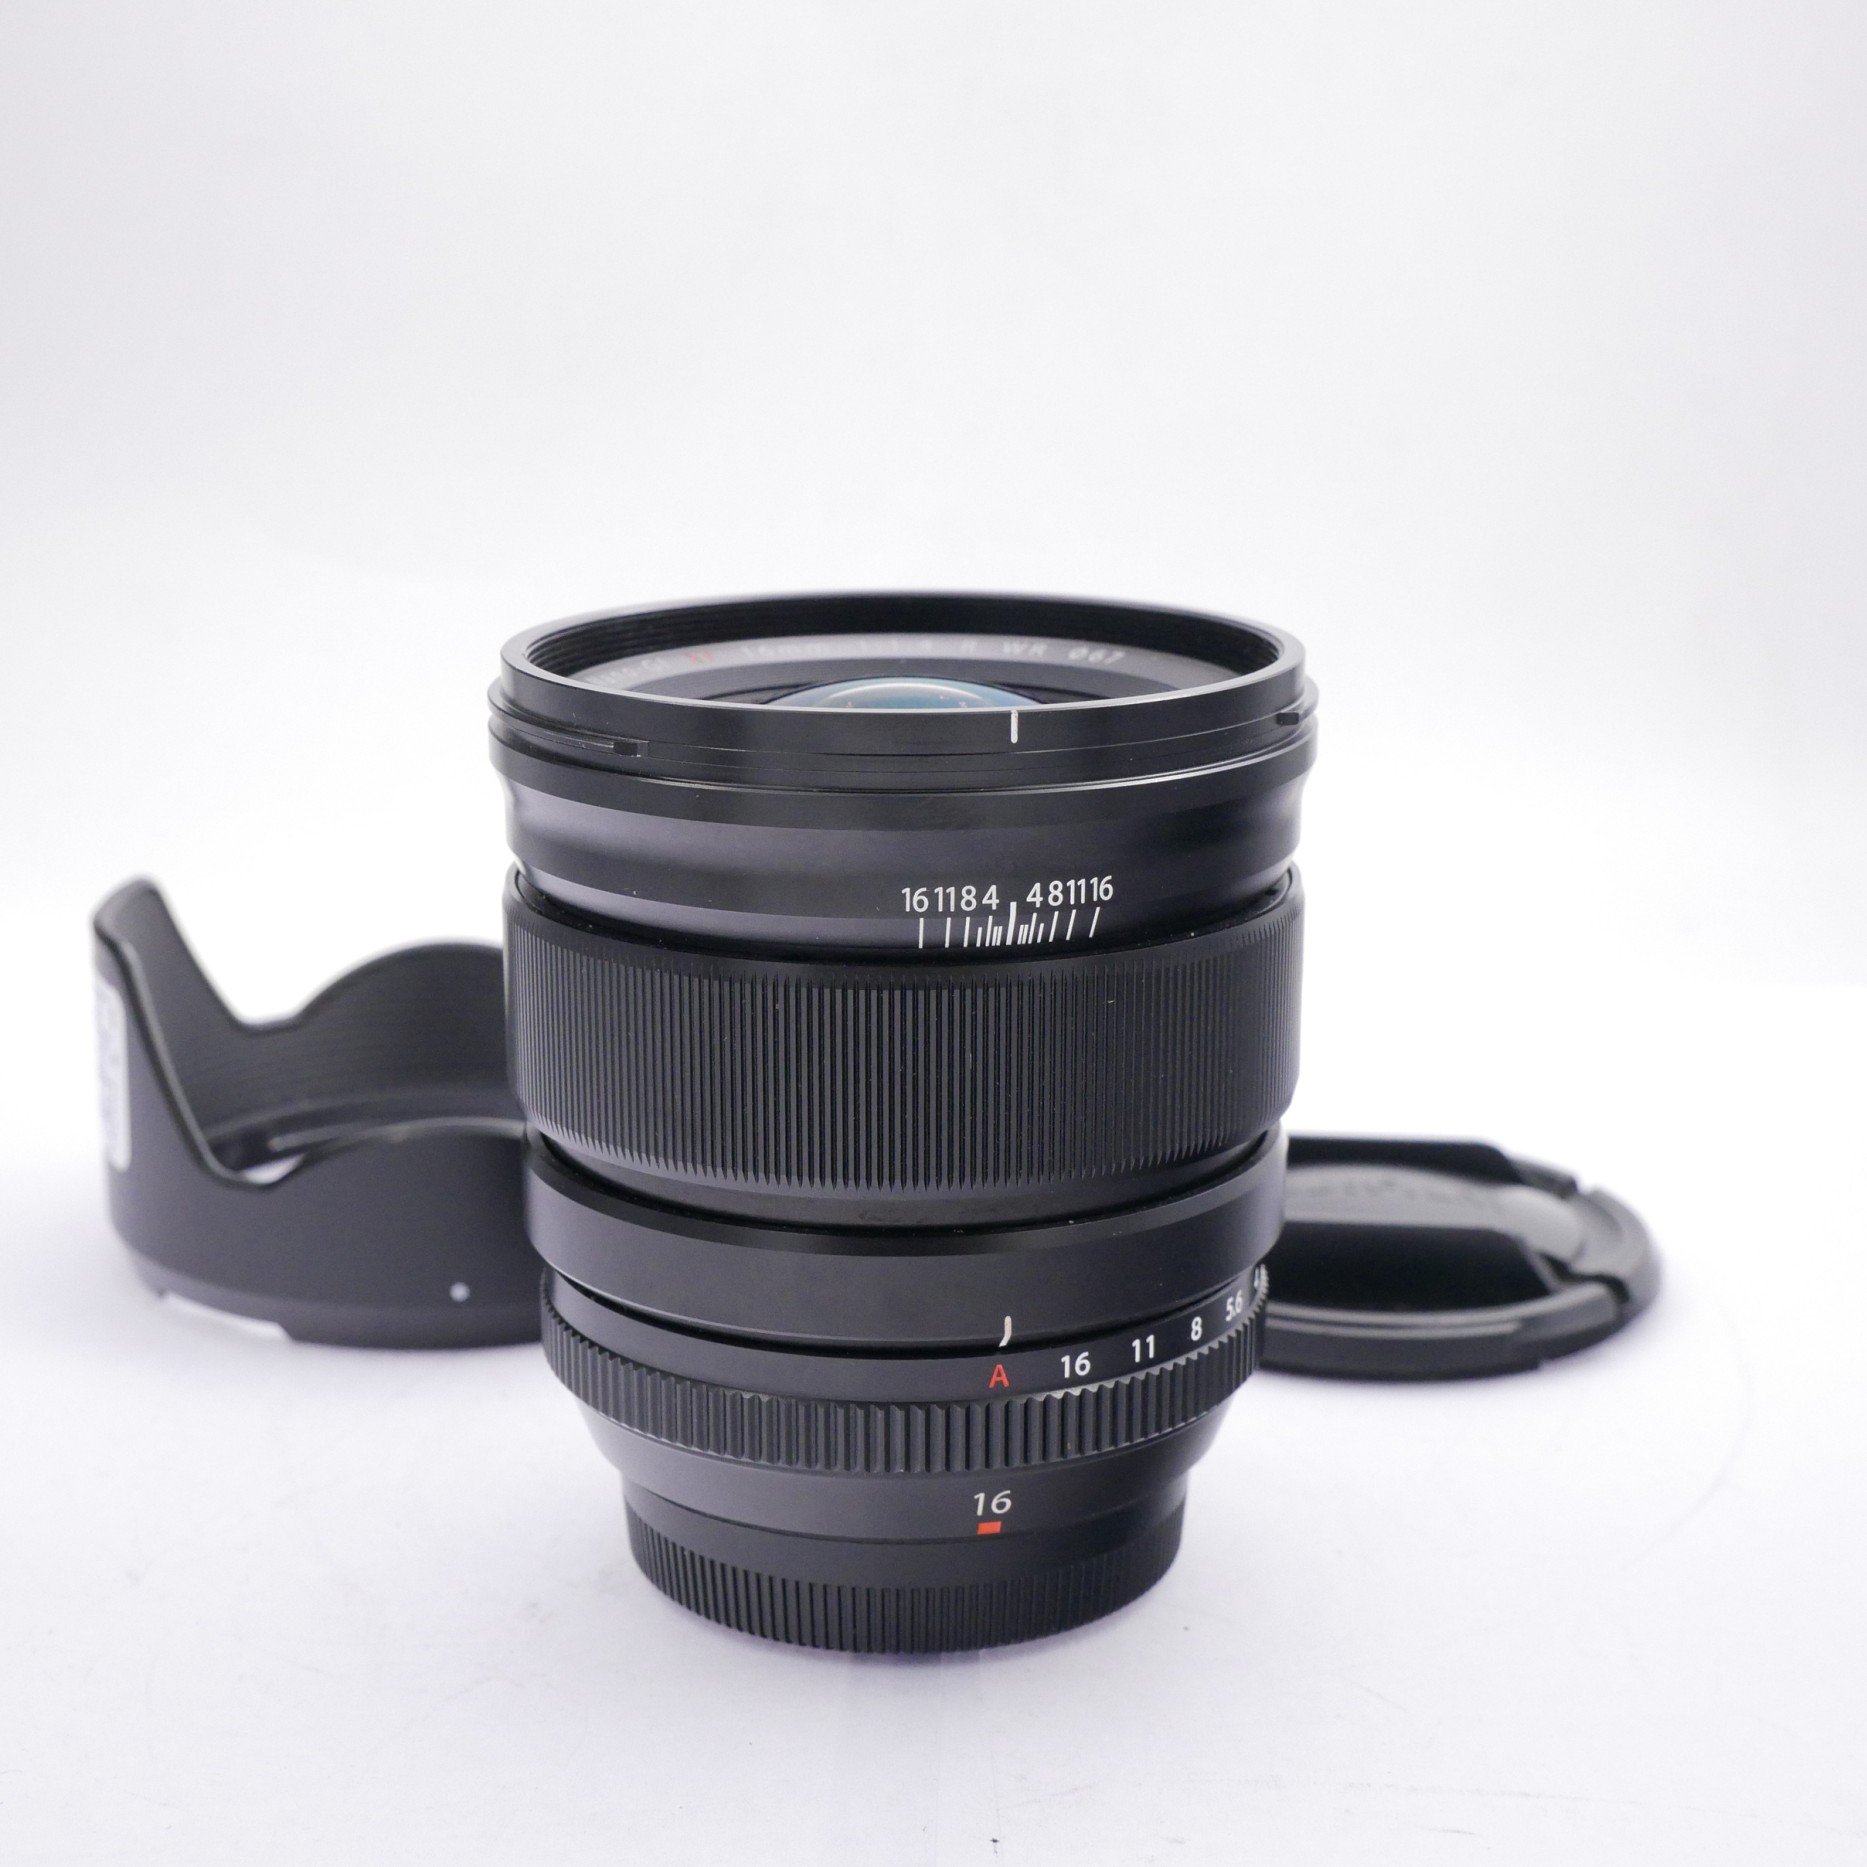 Fujifilm XF 23mm F/1.4 R Asph Lens